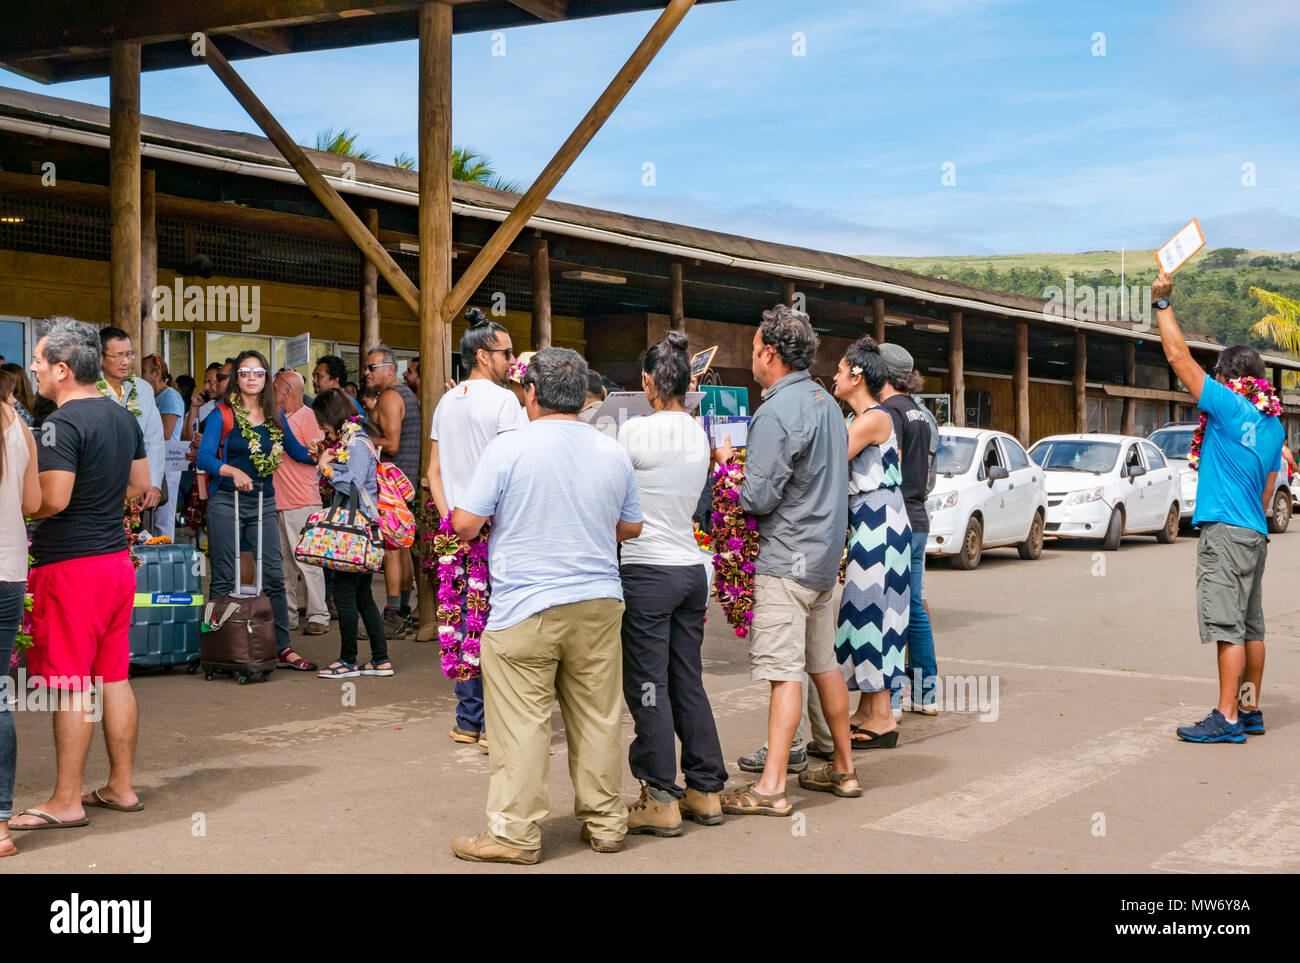 Llegadas al aeropuerto Internacional Mataveri, Isla de Pascua, Chile, con turistas ser saludado por tour operadores acogiéndolos con guirnaldas lei Foto de stock